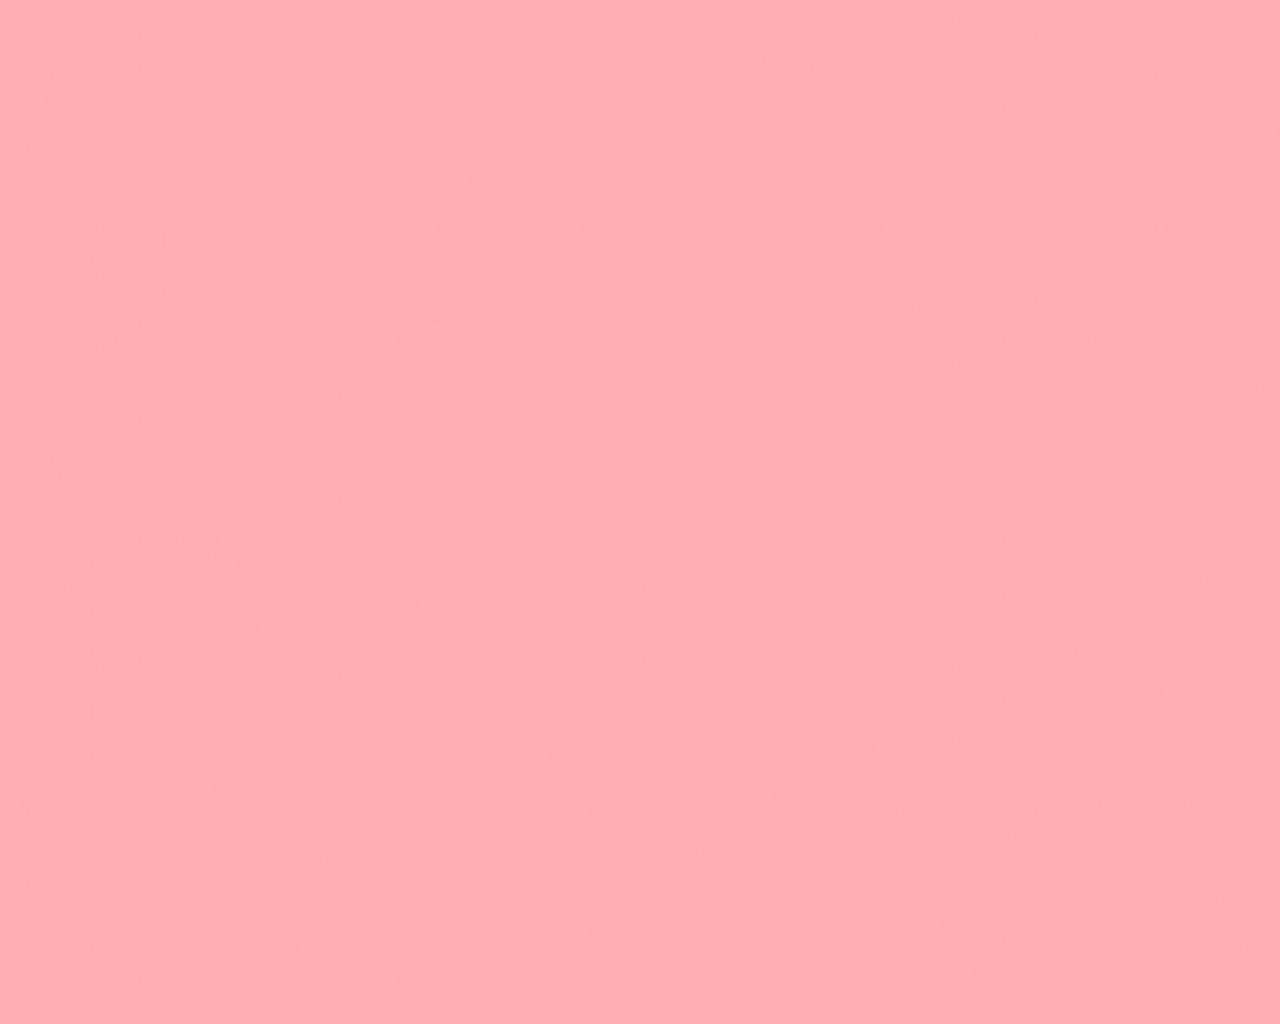 Free download Plain Light Pink Wallpaper Light pink backg [1500x1125] for your Desktop, Mobile & Tablet. Explore Plain Pink Wallpaper. Pink Wallpaper for Girls, Pink and Black Desktop Wallpaper